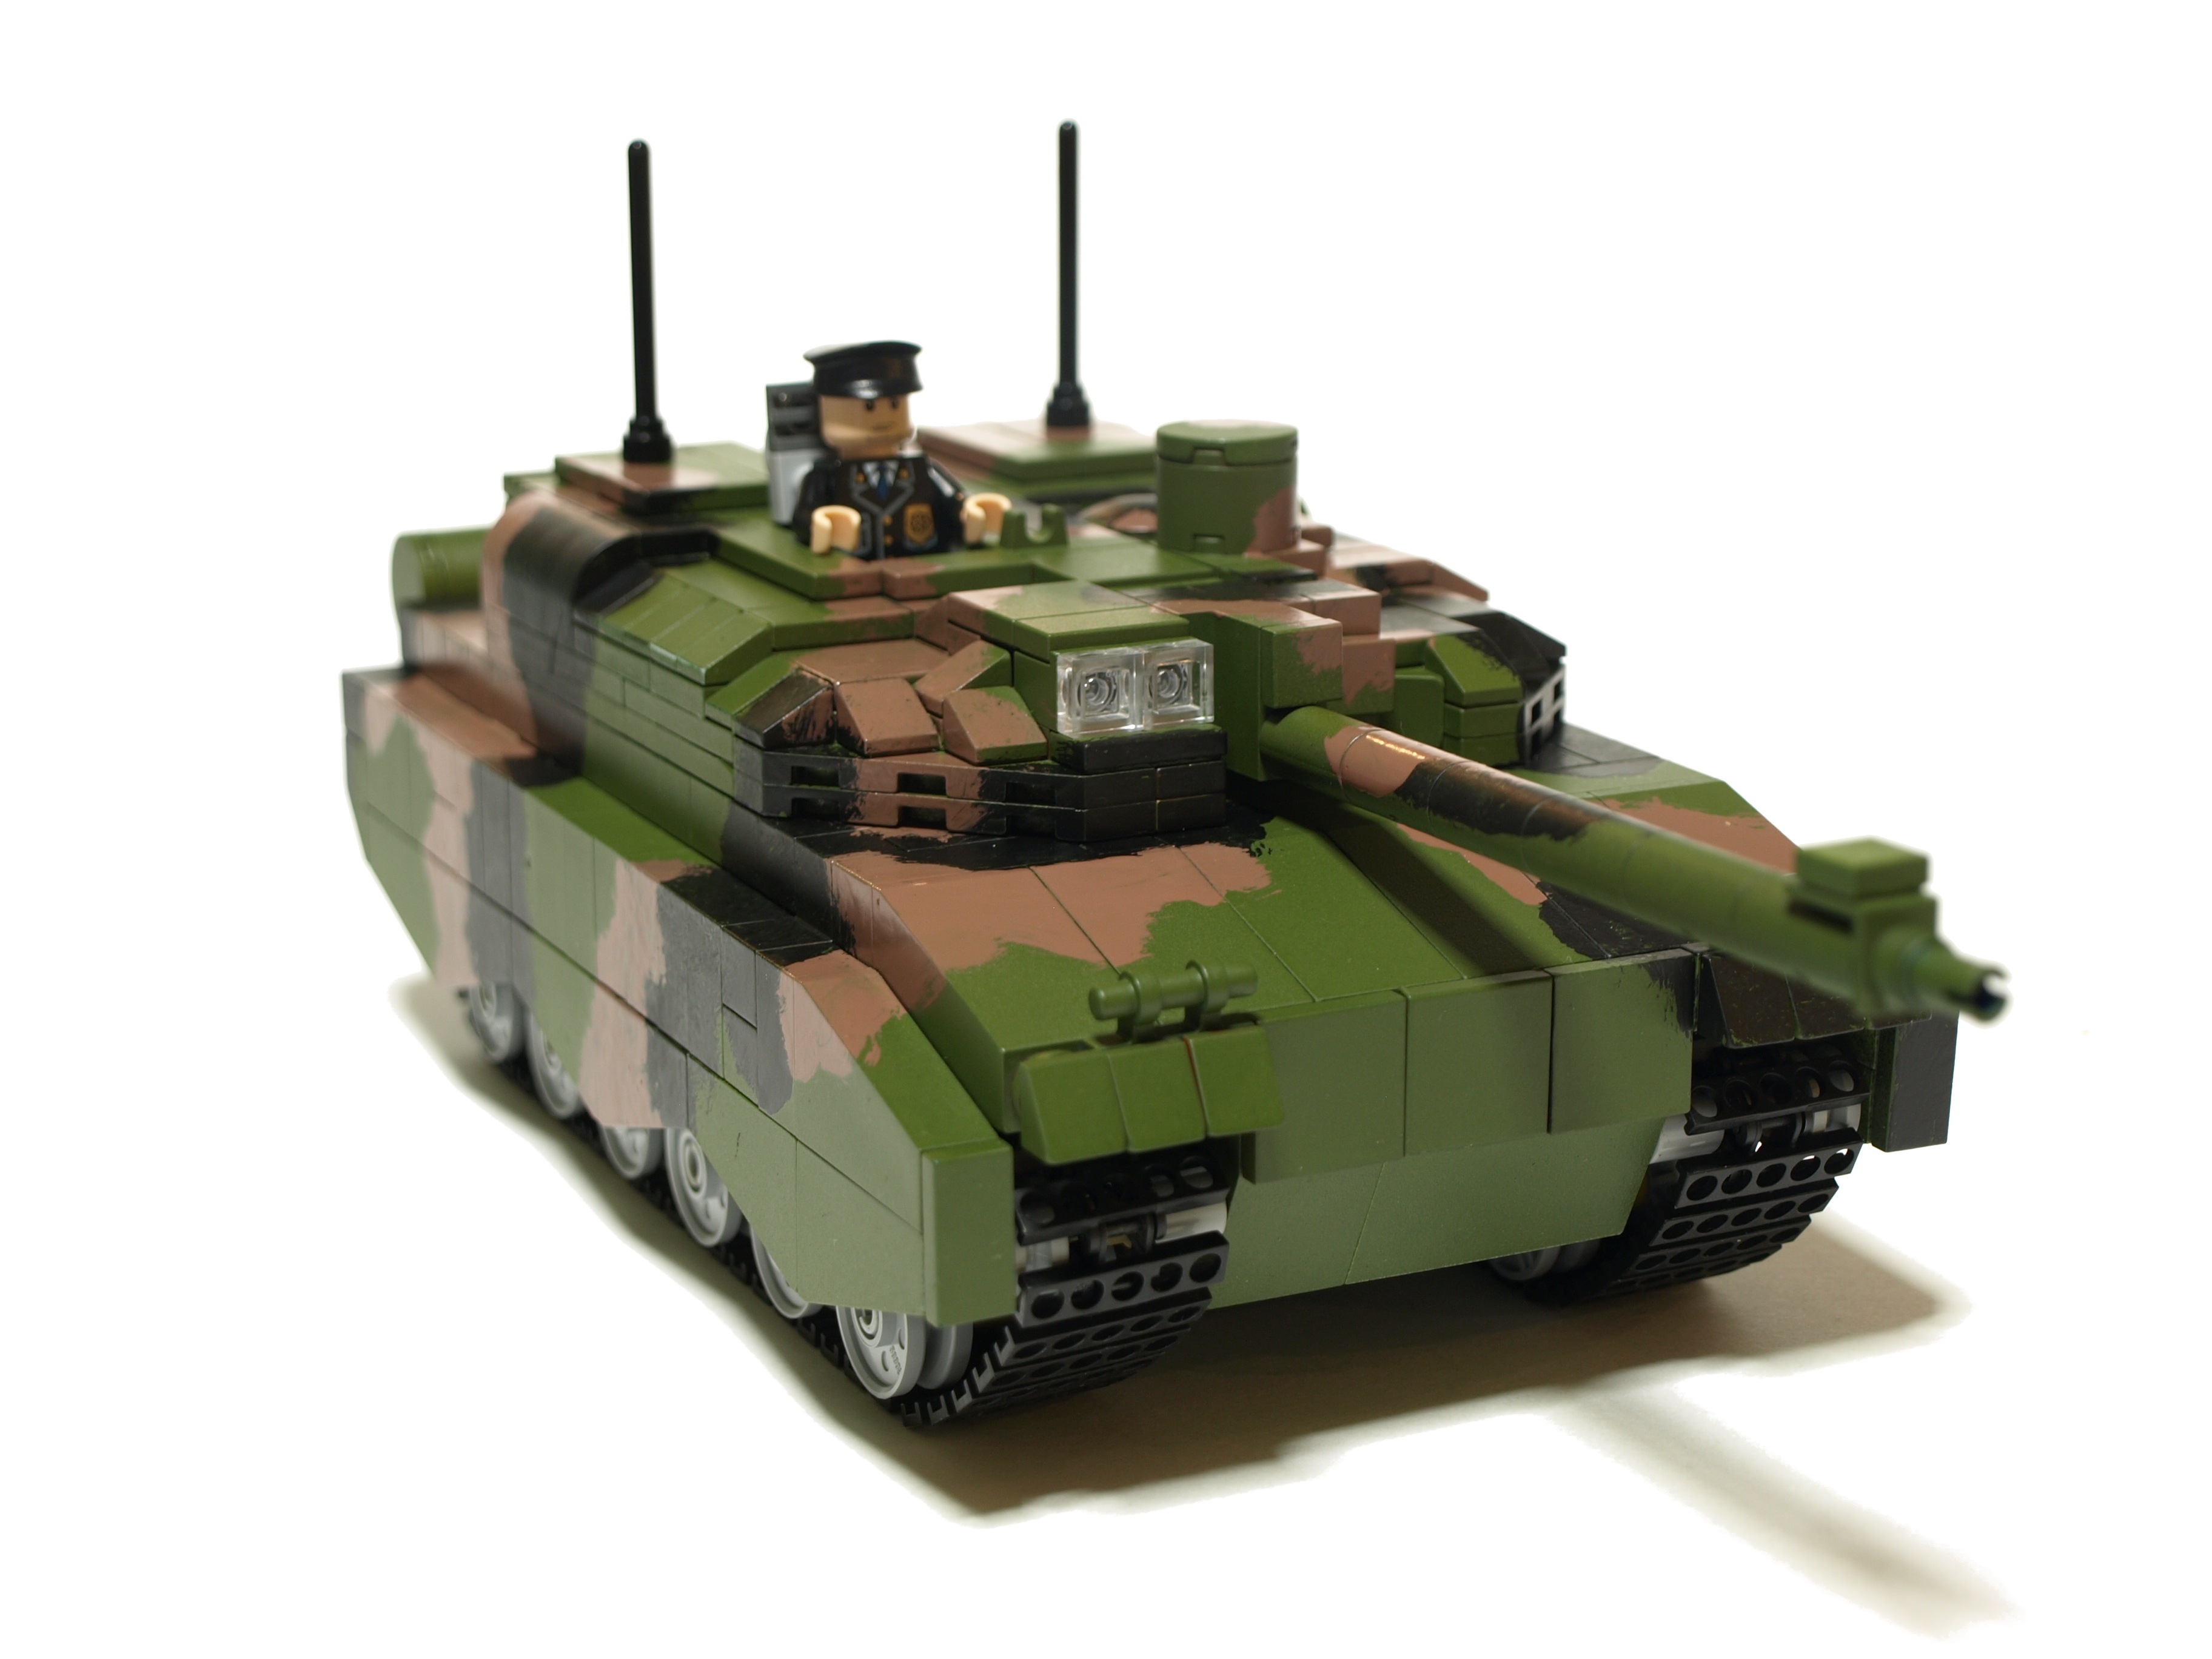 Descarga gratuita de fondo de pantalla para móvil de Tanques, Lego, Militar, Tanque, Amx Leclerc.